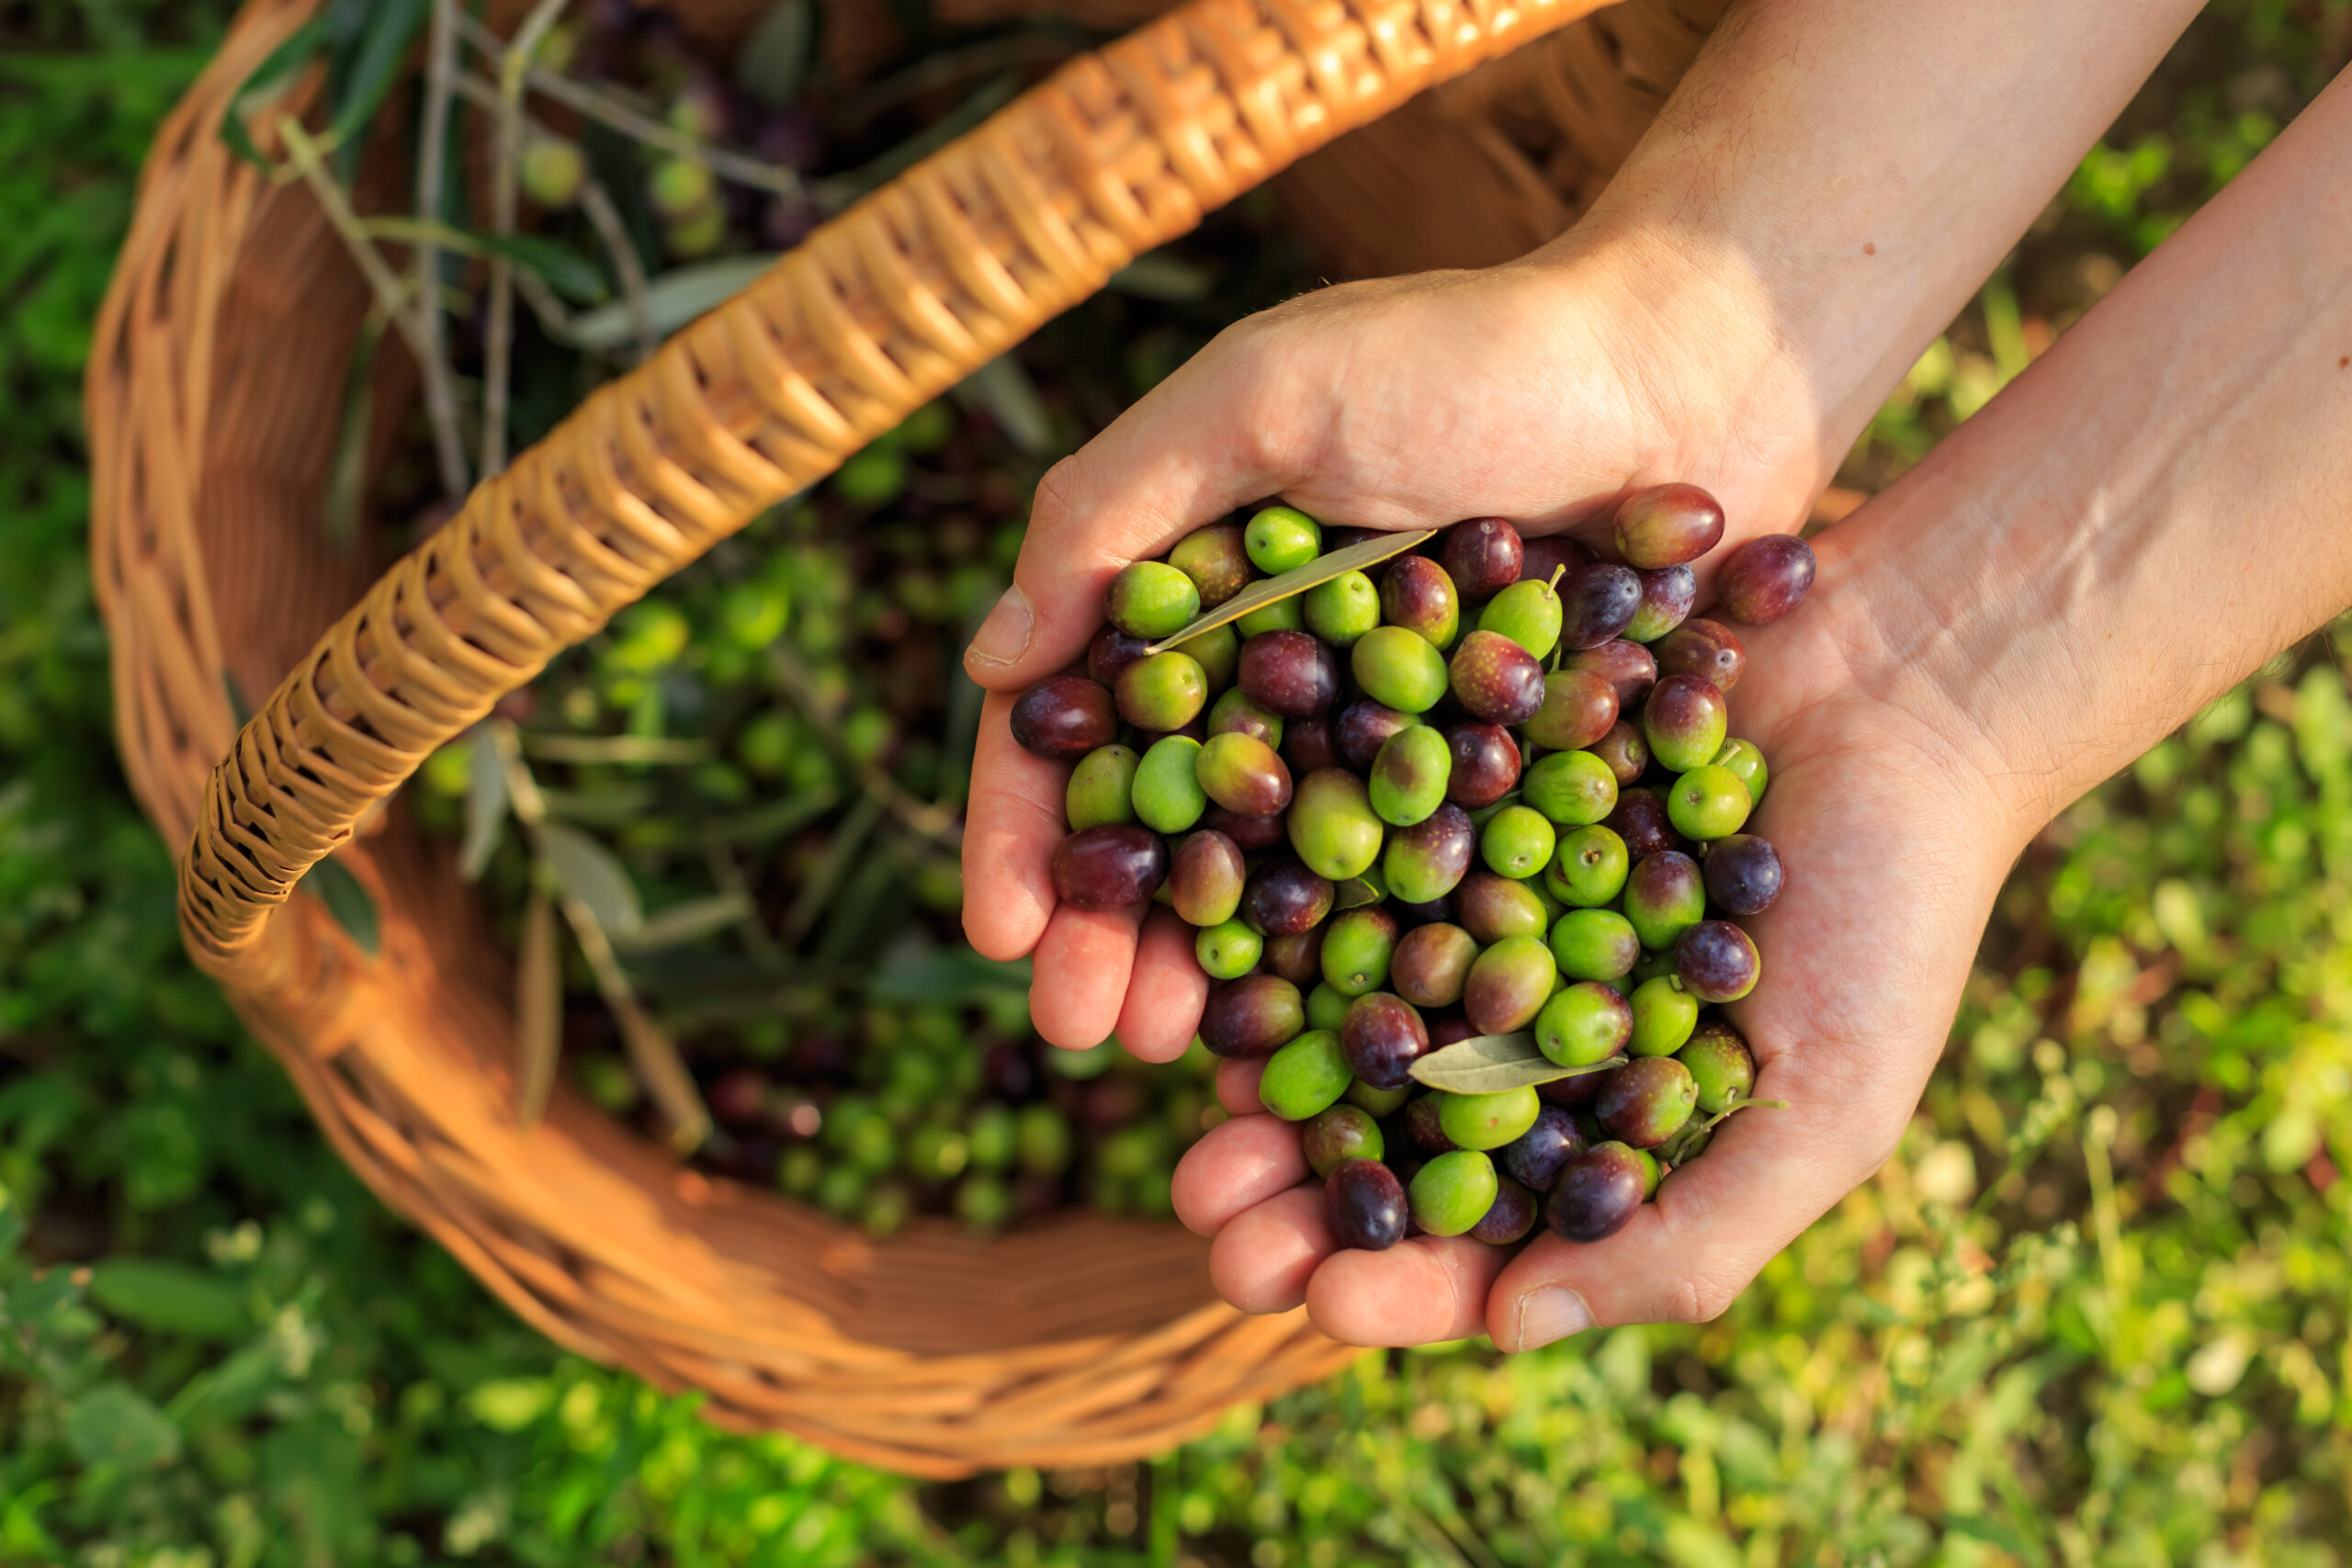 Olive harvesting in Tunisia